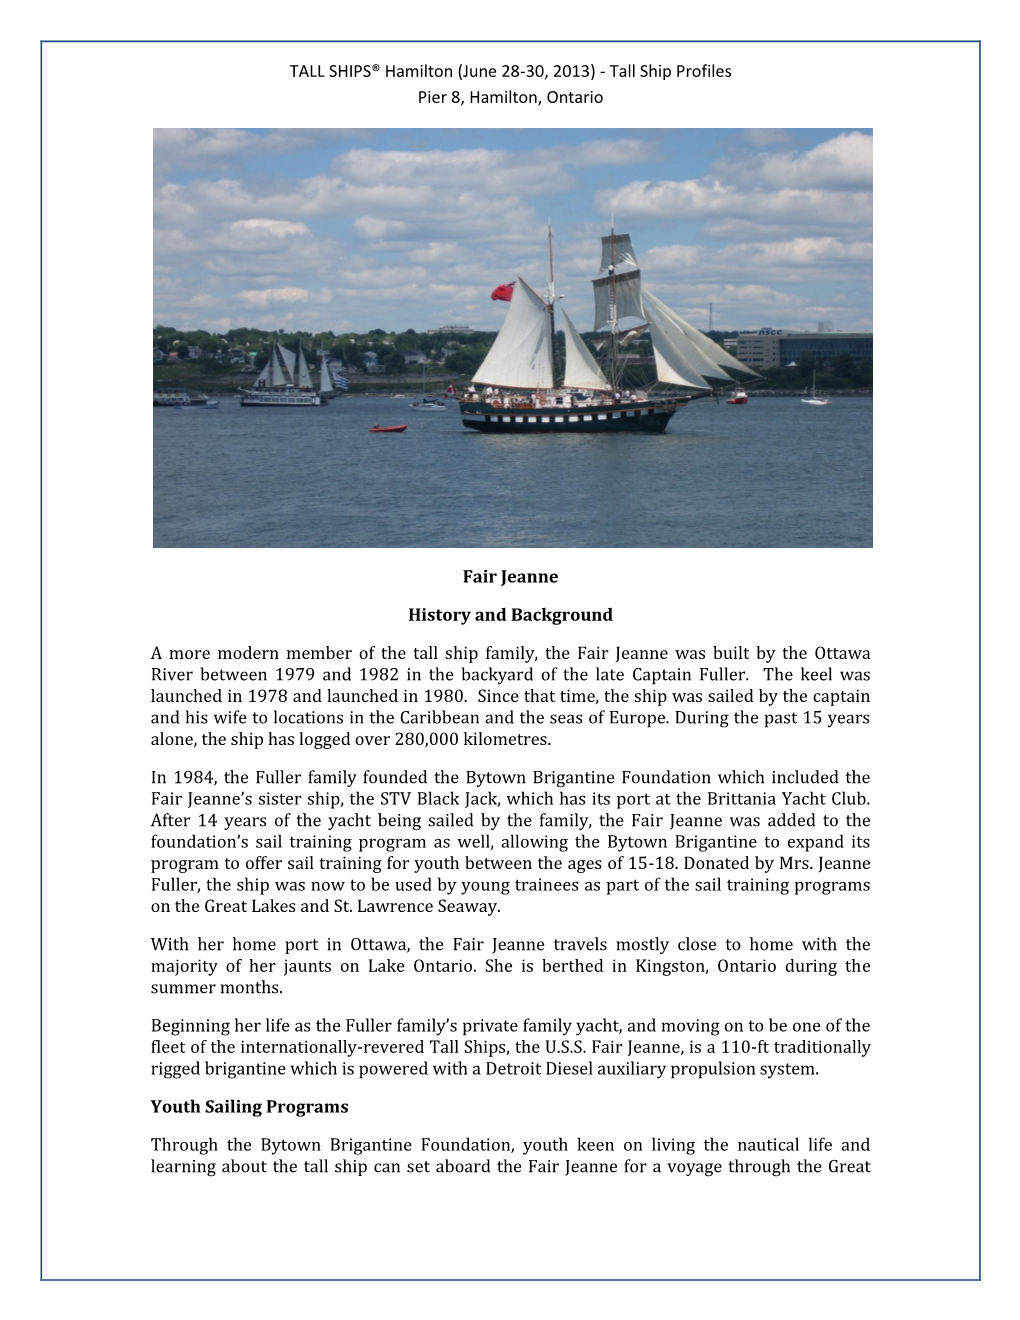 TALL SHIPS® Hamilton (June 28-30, 2013) - Tall Ship Profiles Pier 8, Hamilton, Ontario